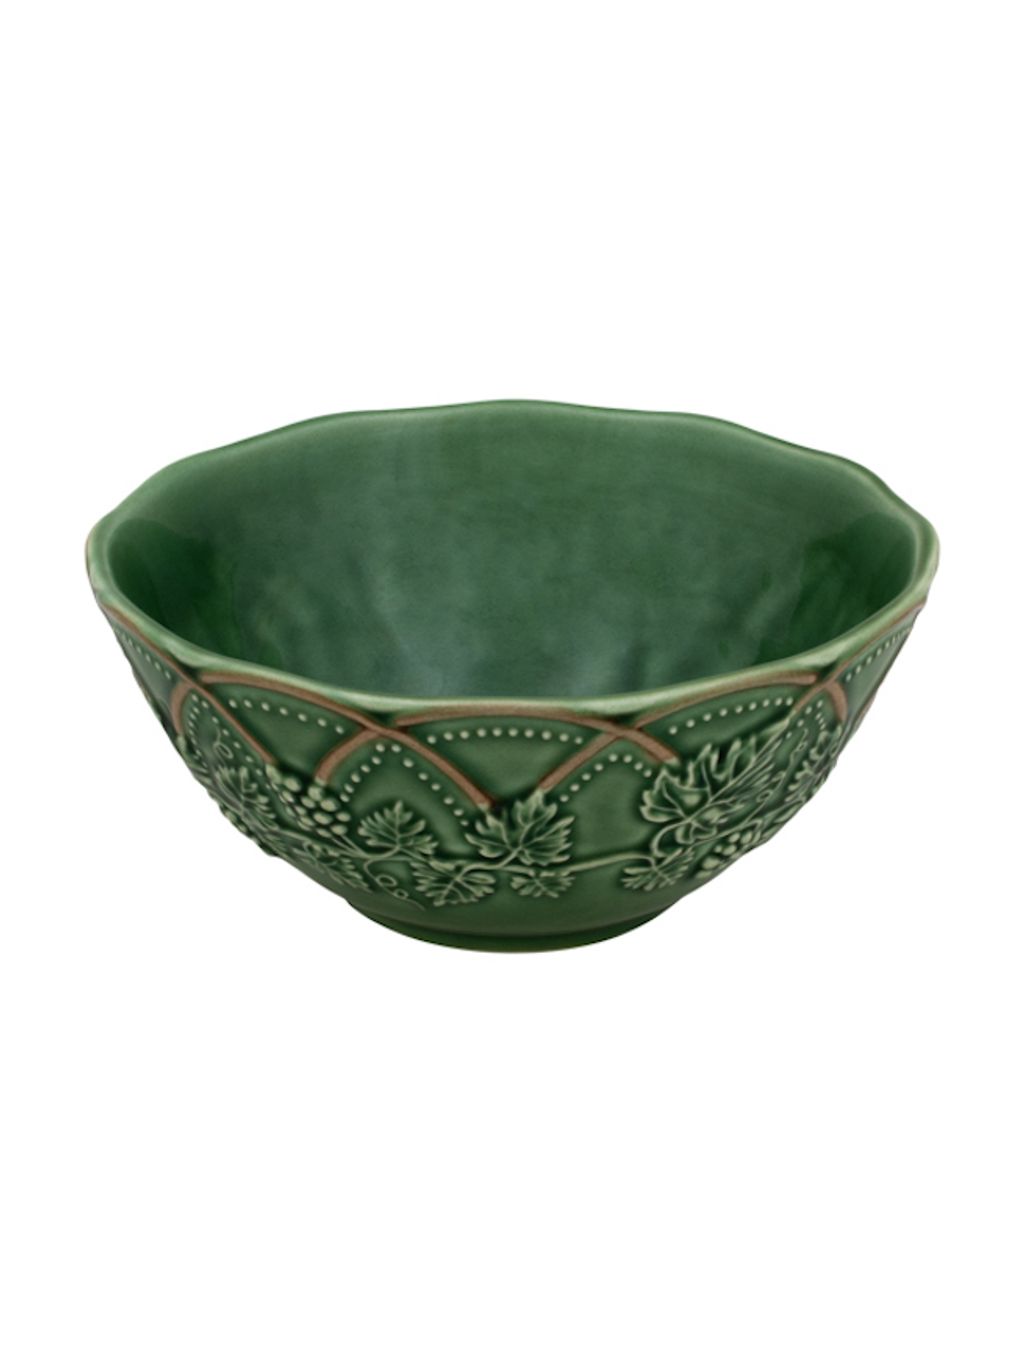 65011483 Hunting bowl 15.5 green_brown x4